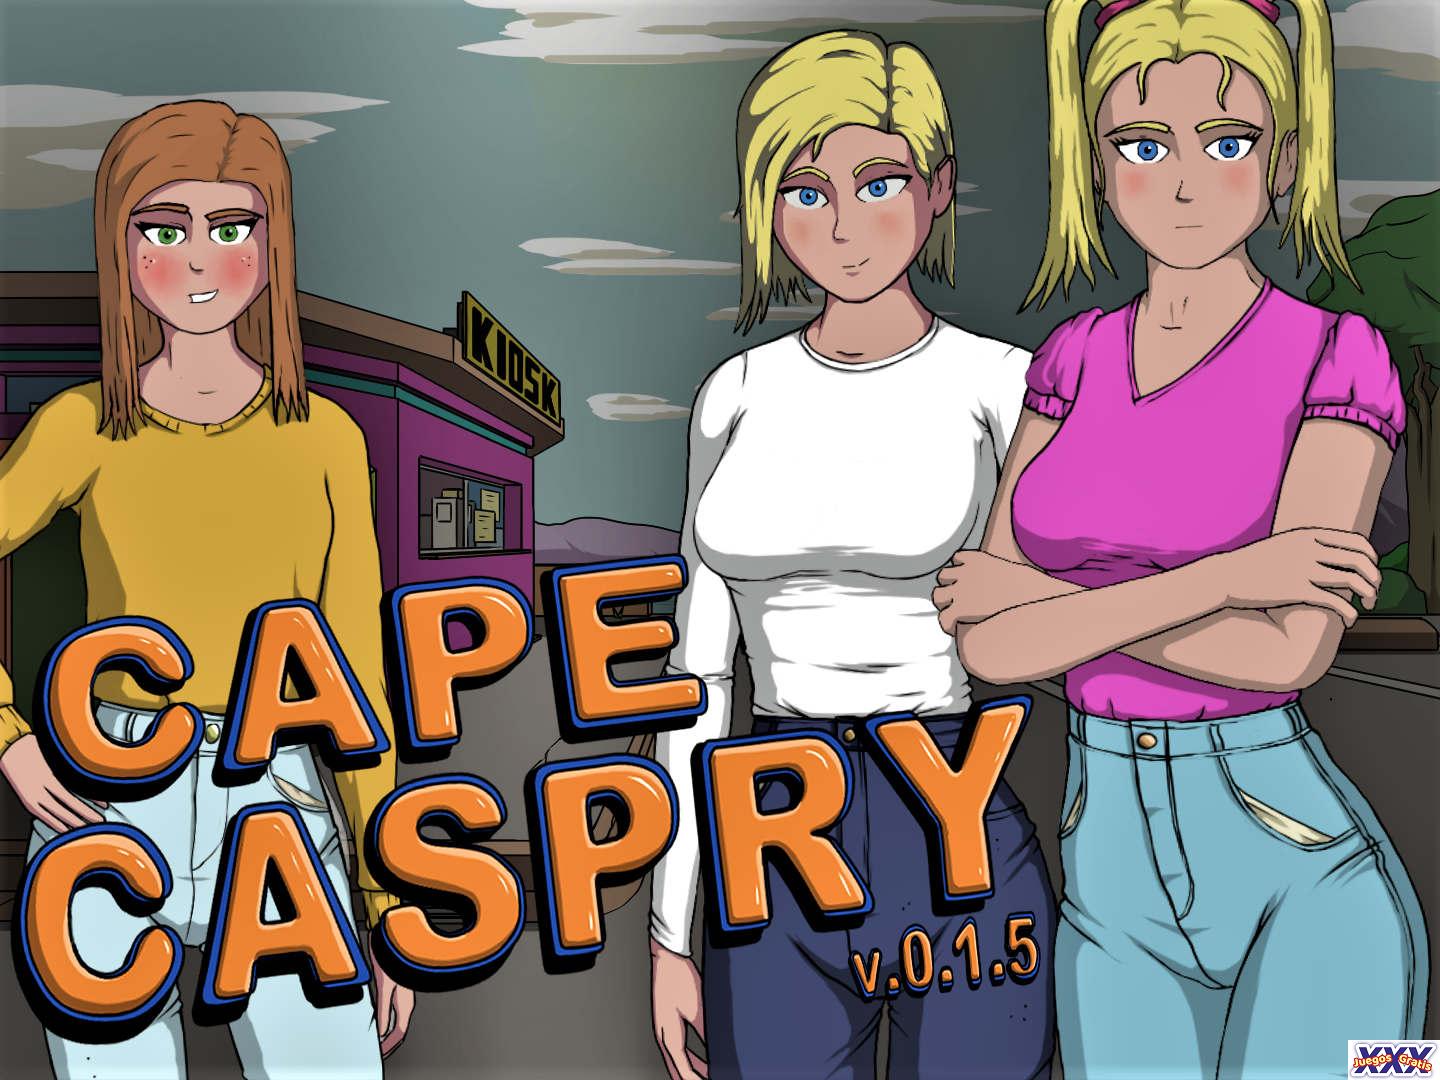 CAPE CASPRY [V0.1.5B] [VERBADROME]